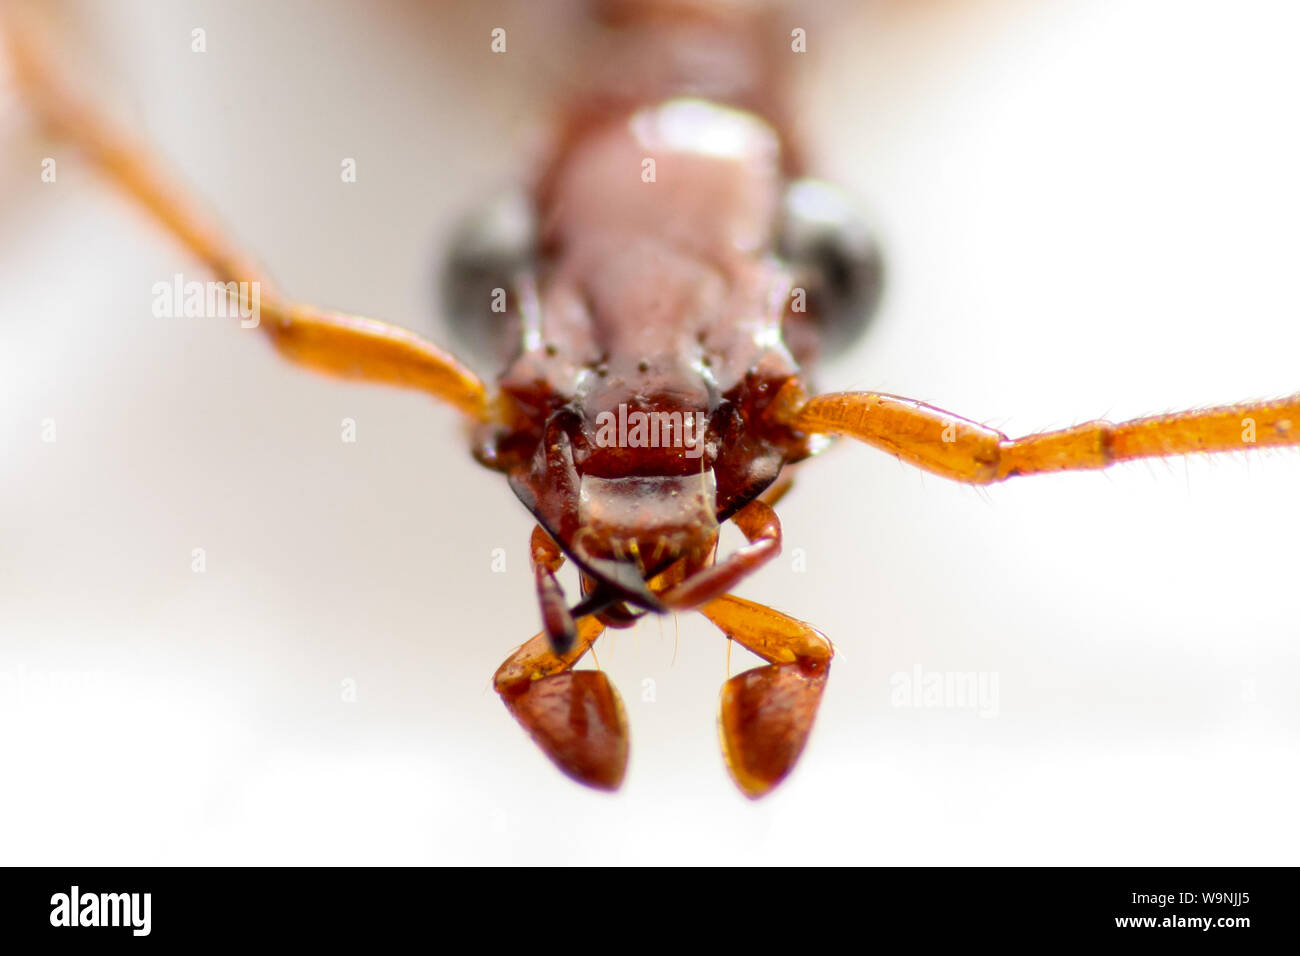 Appuntato di insetto, macro di un coleottero conservato per entomologia lab tassonomia (Coleotteri Carabidi), mostra la testa di insetto in dettaglio Foto Stock